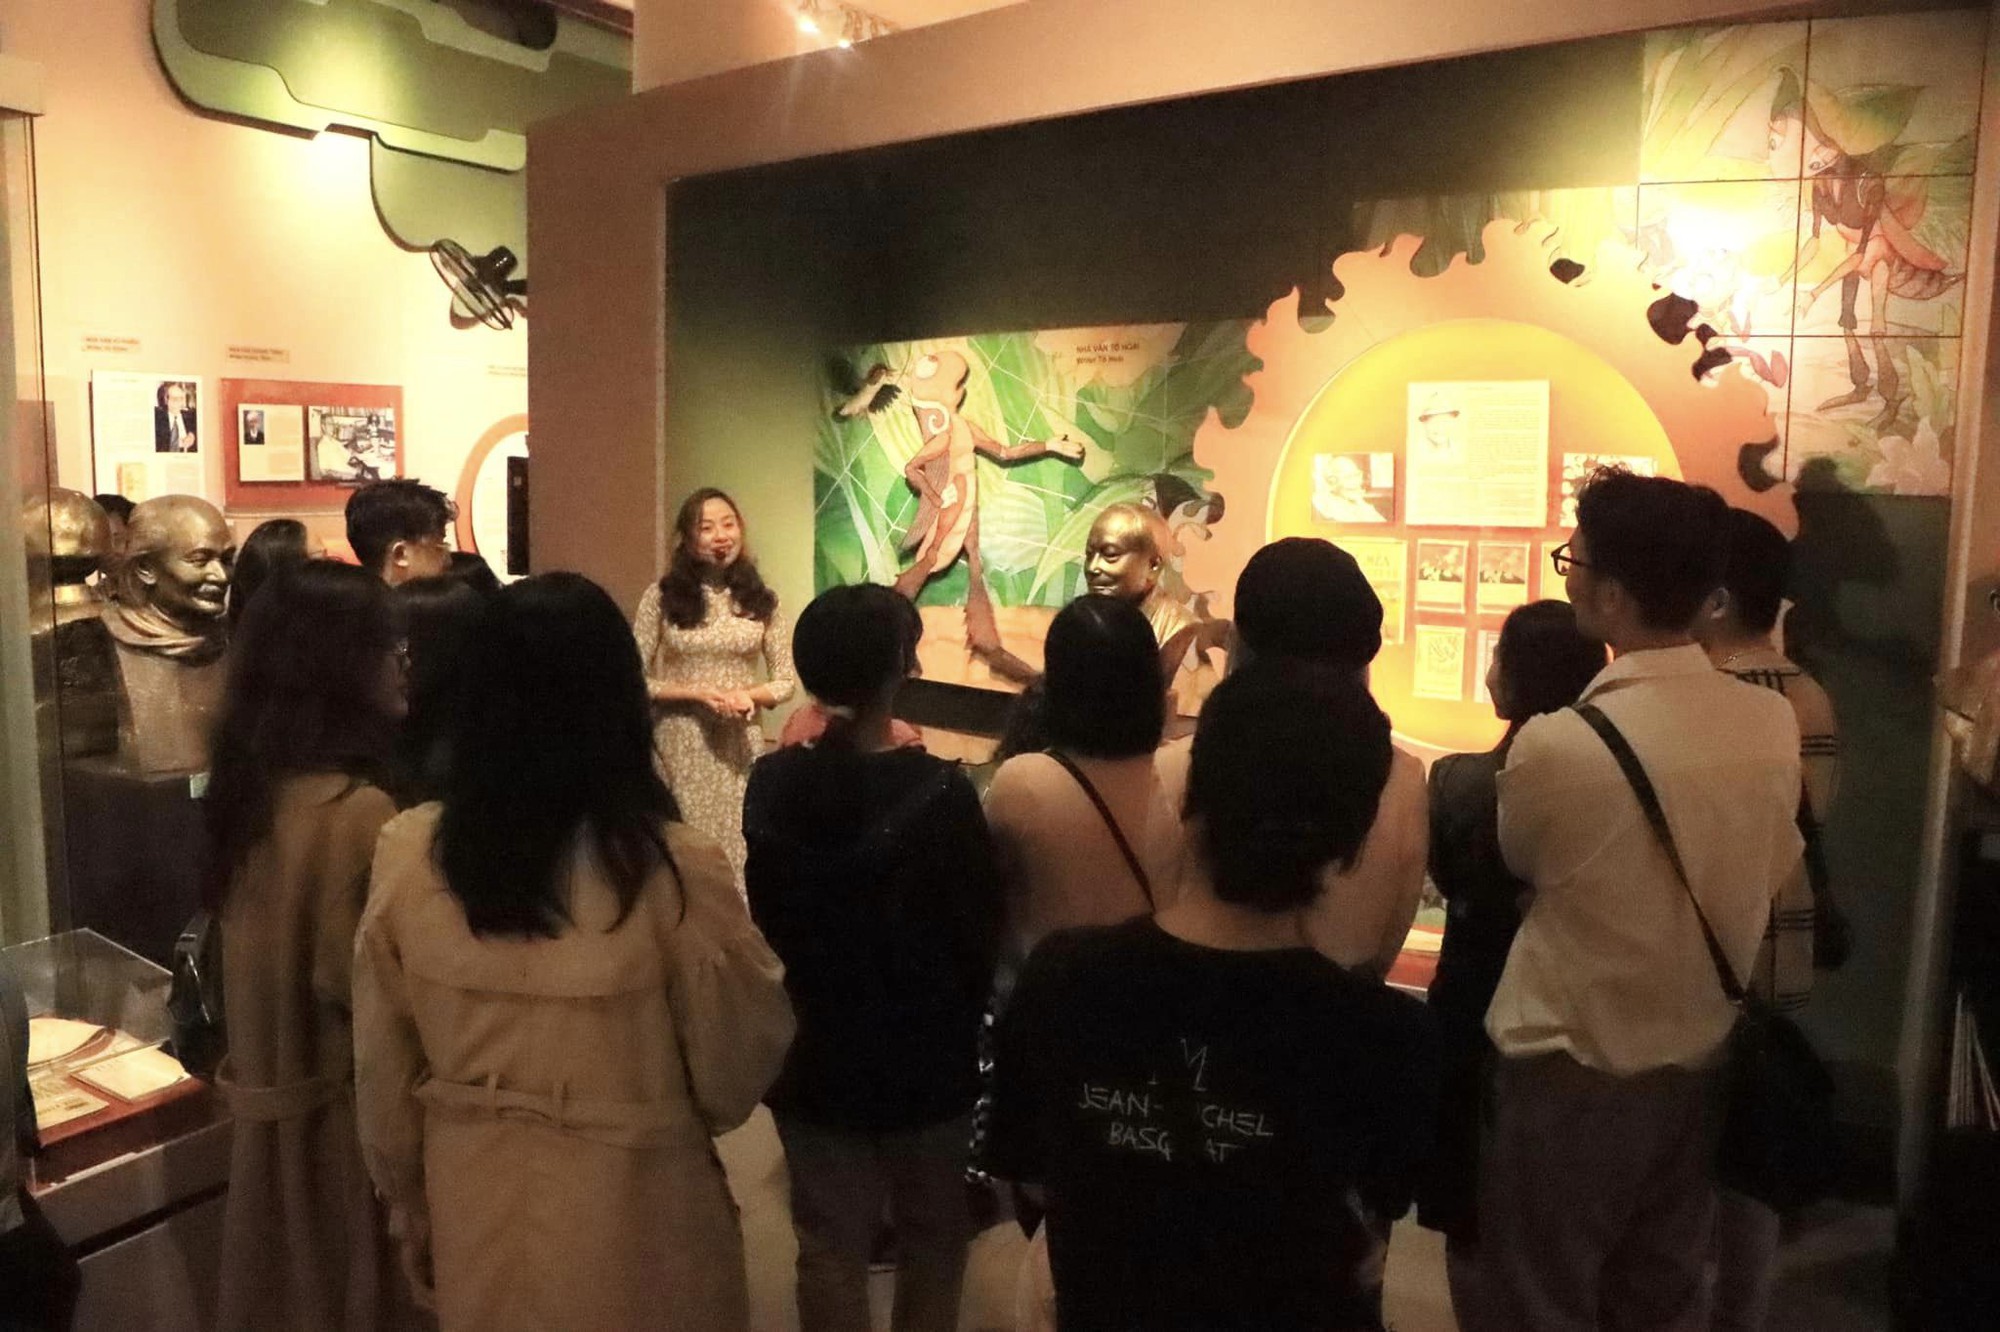 Trải nghiệm Hà Nội về đêm với các tour thăm bảo tàng, tận mắt thấy những sản phẩm ký ức lịch sử - Ảnh 12.